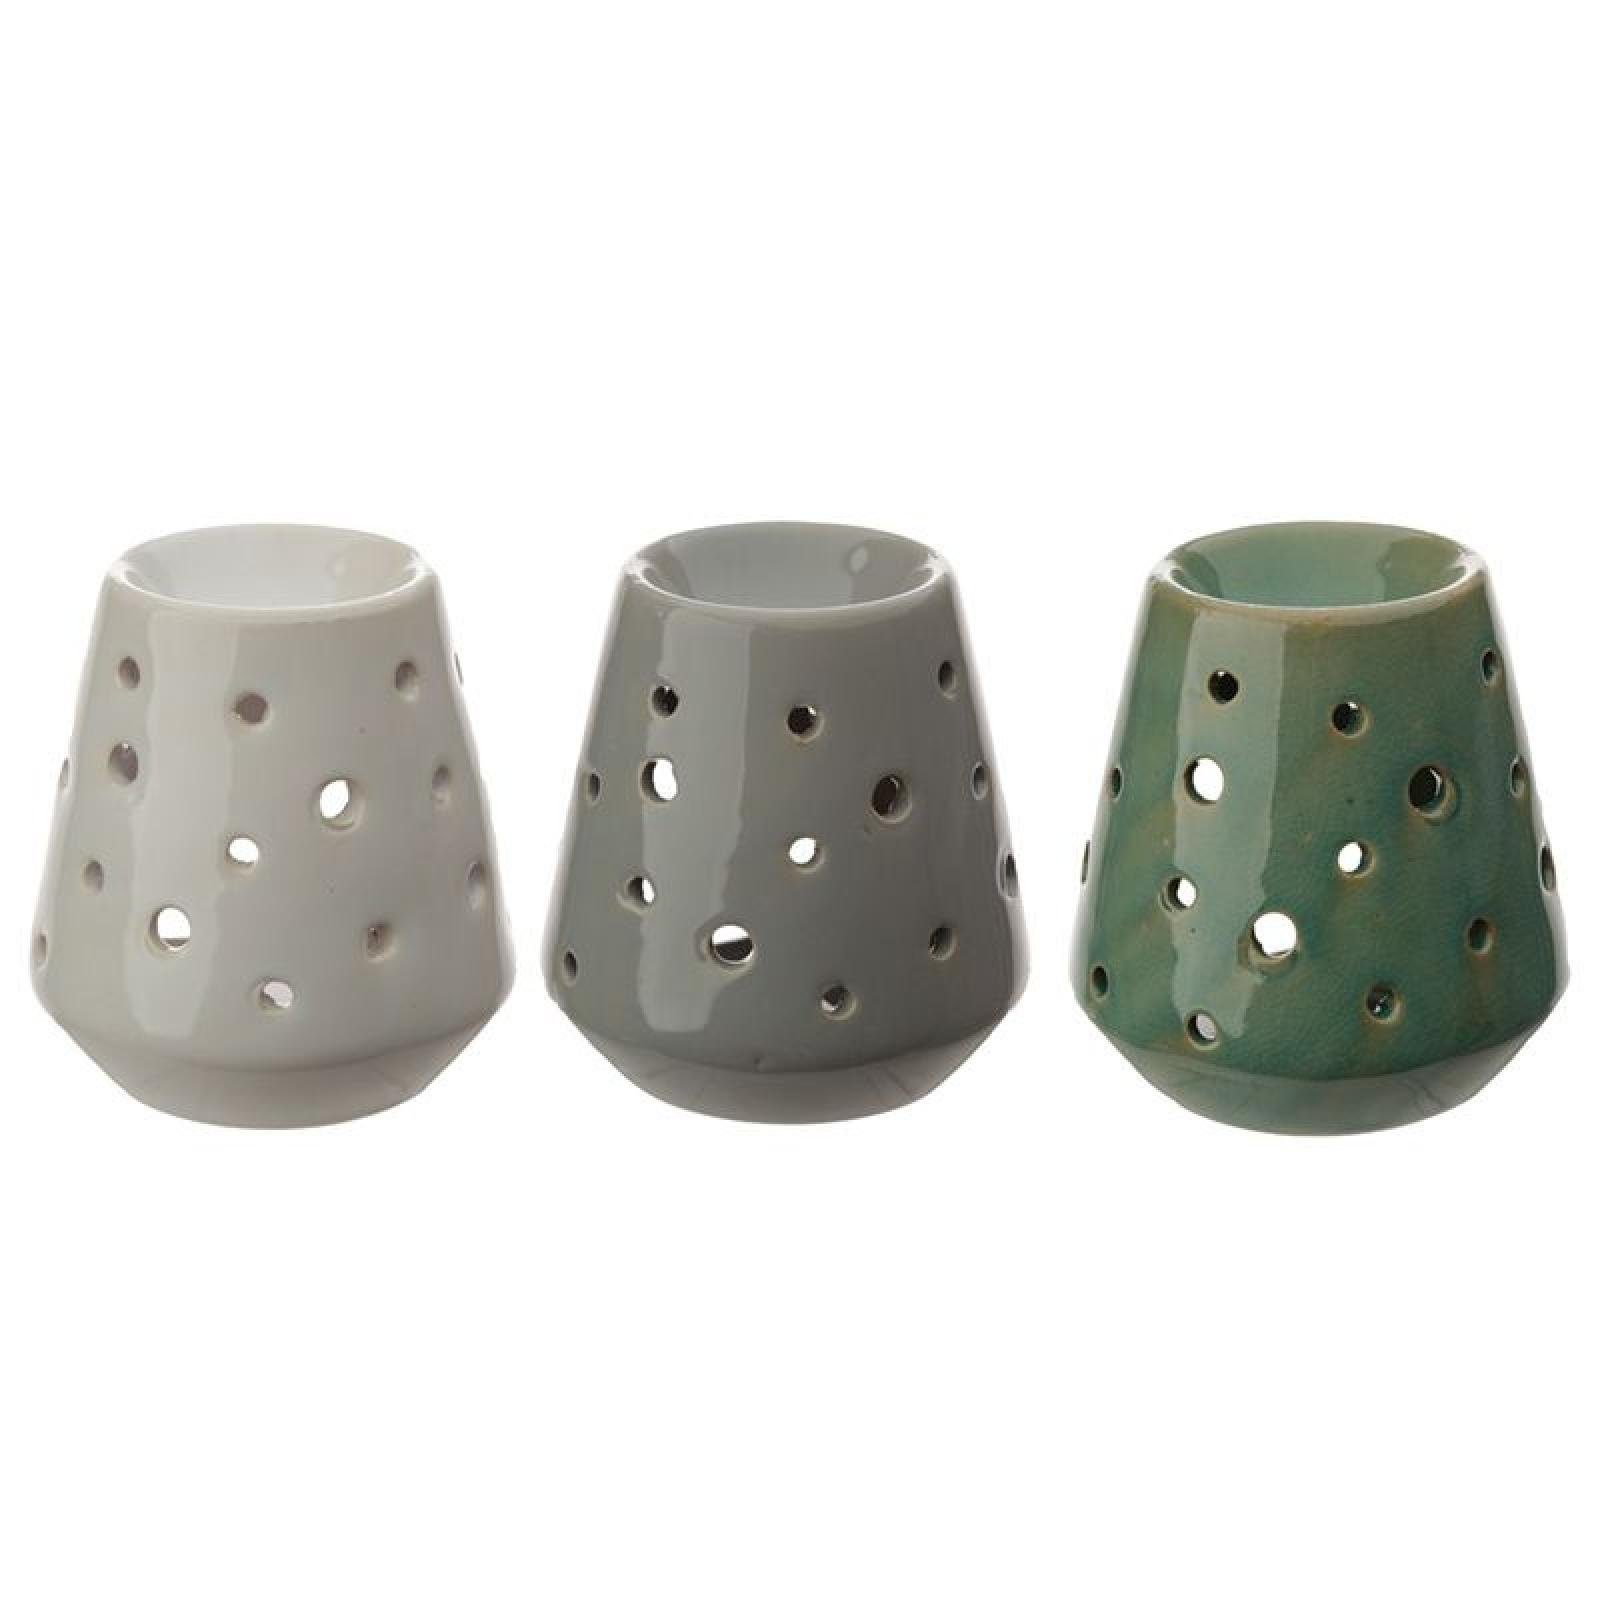 Puckator Duftlampe Eden Konierte Duftlampe aus Keramik mit runden Ausschnitten